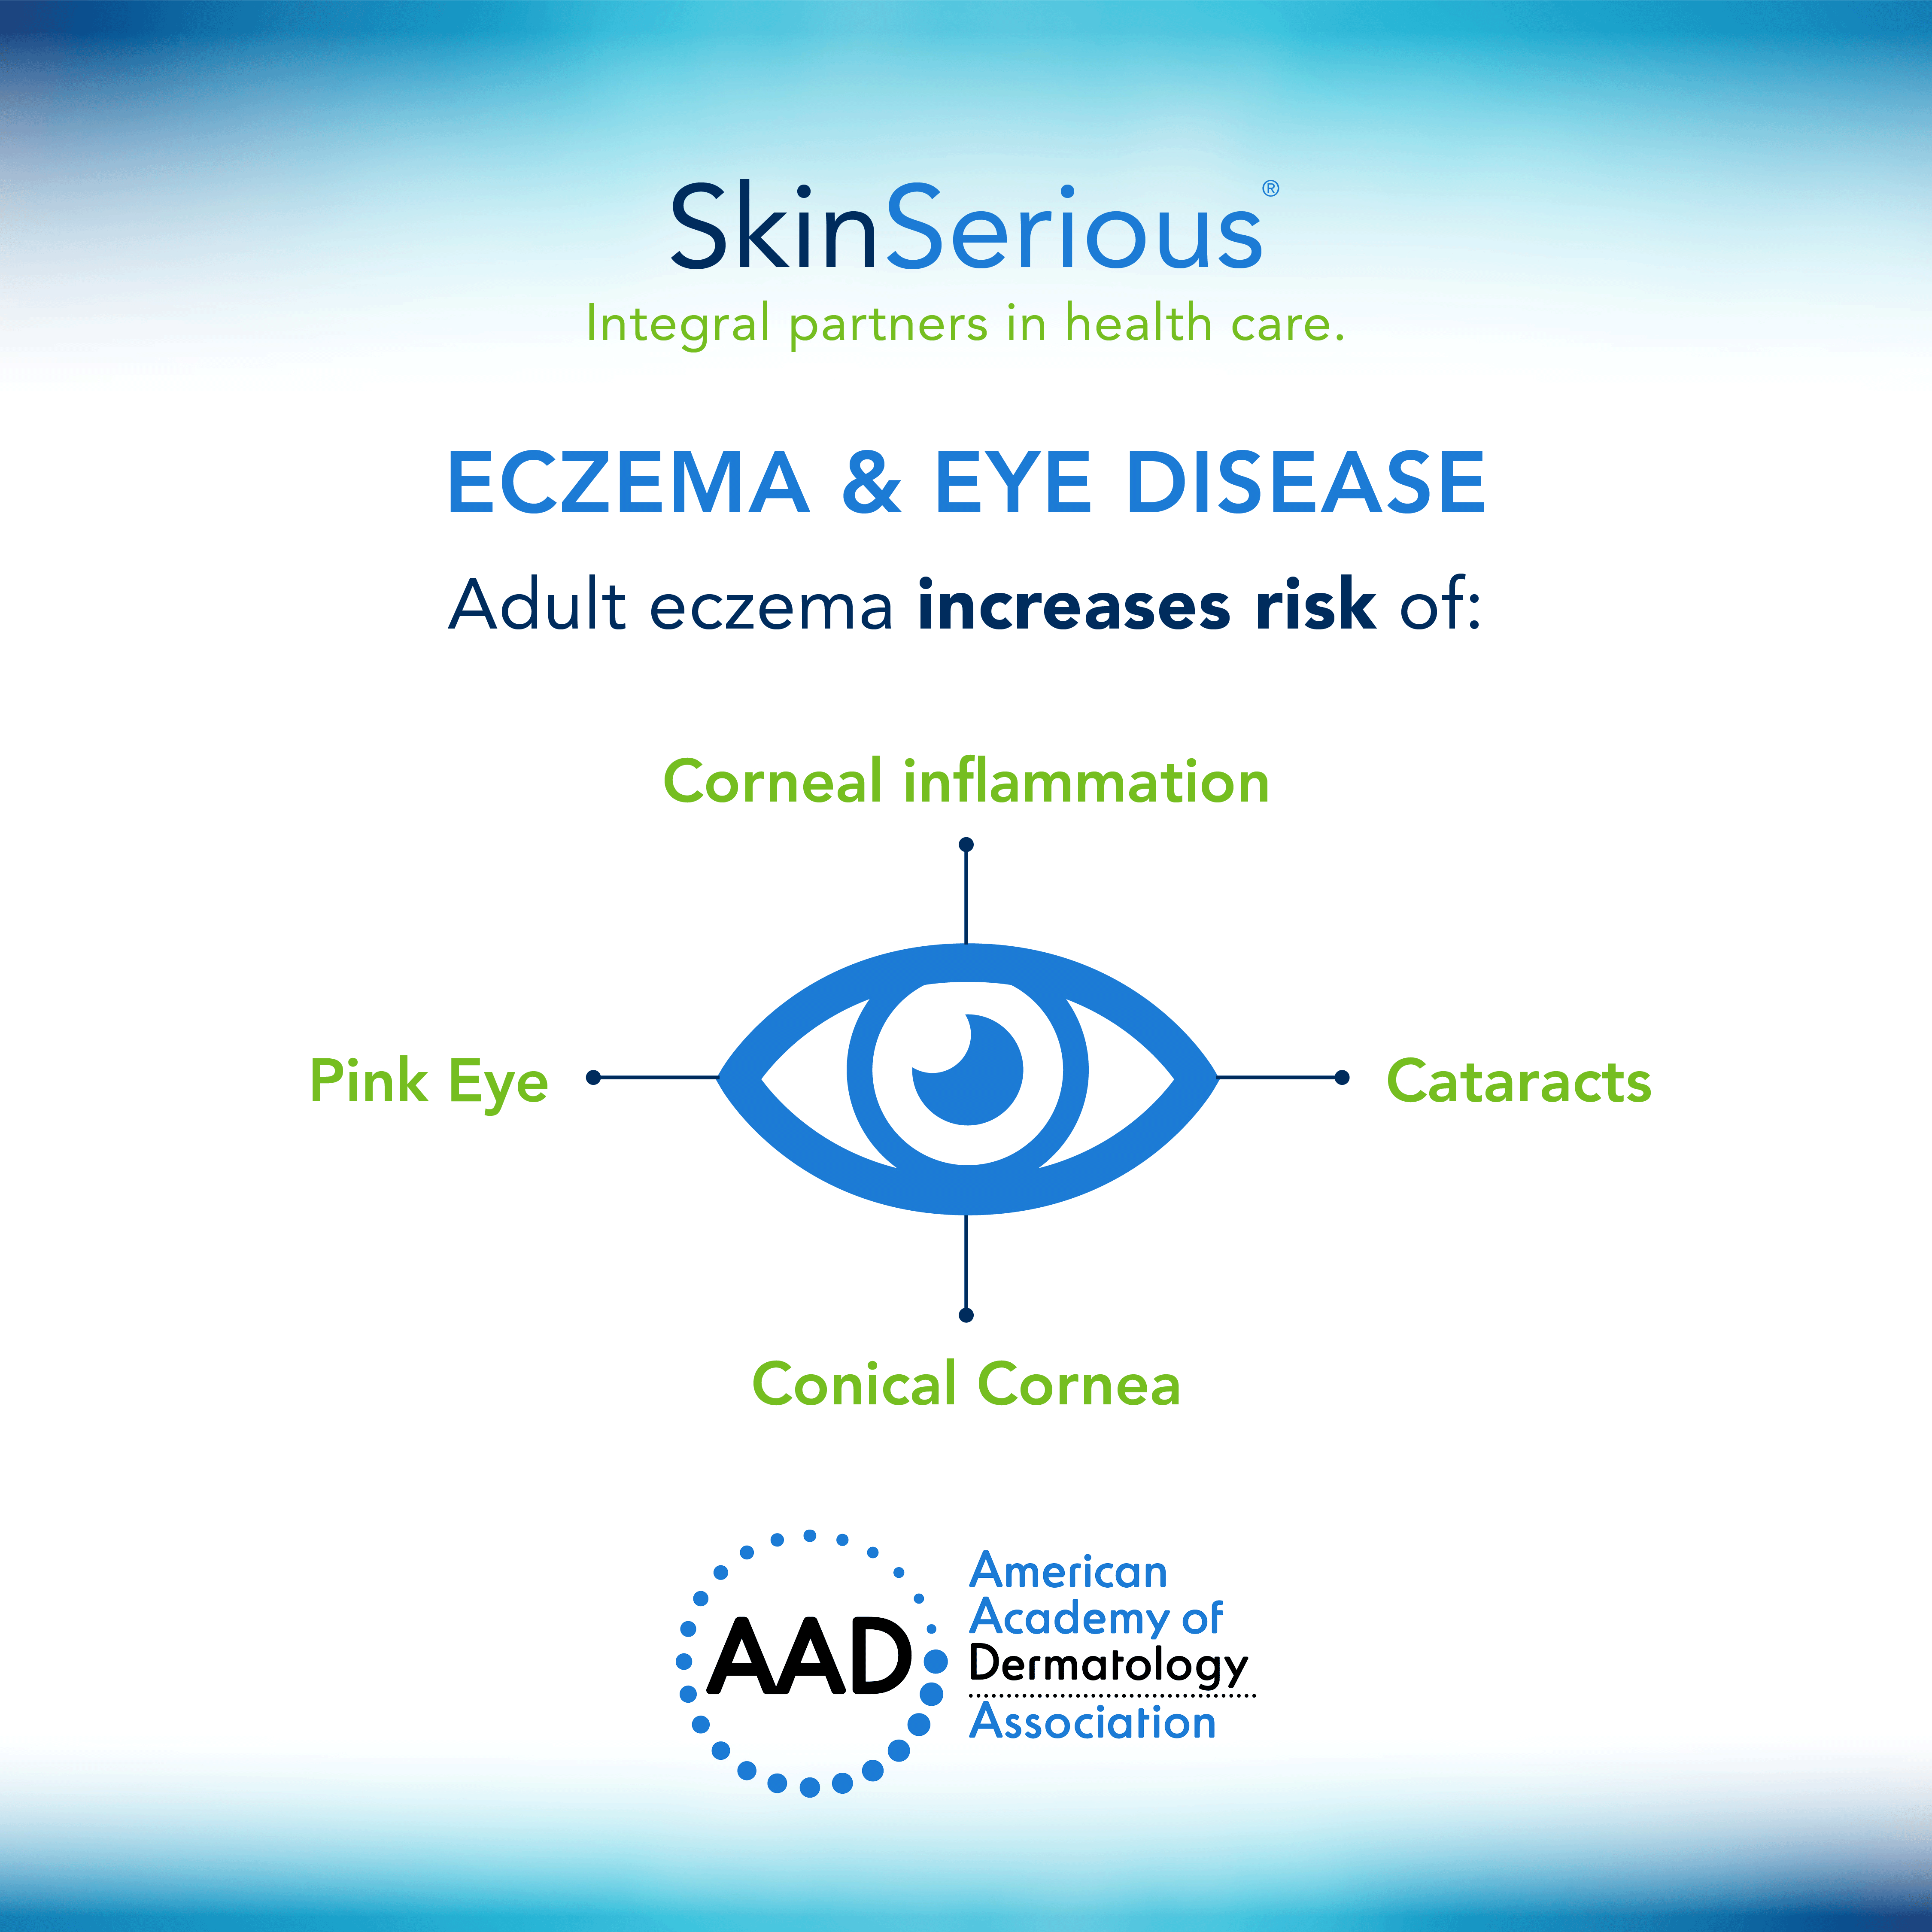 Eczema and eye disease infographic image